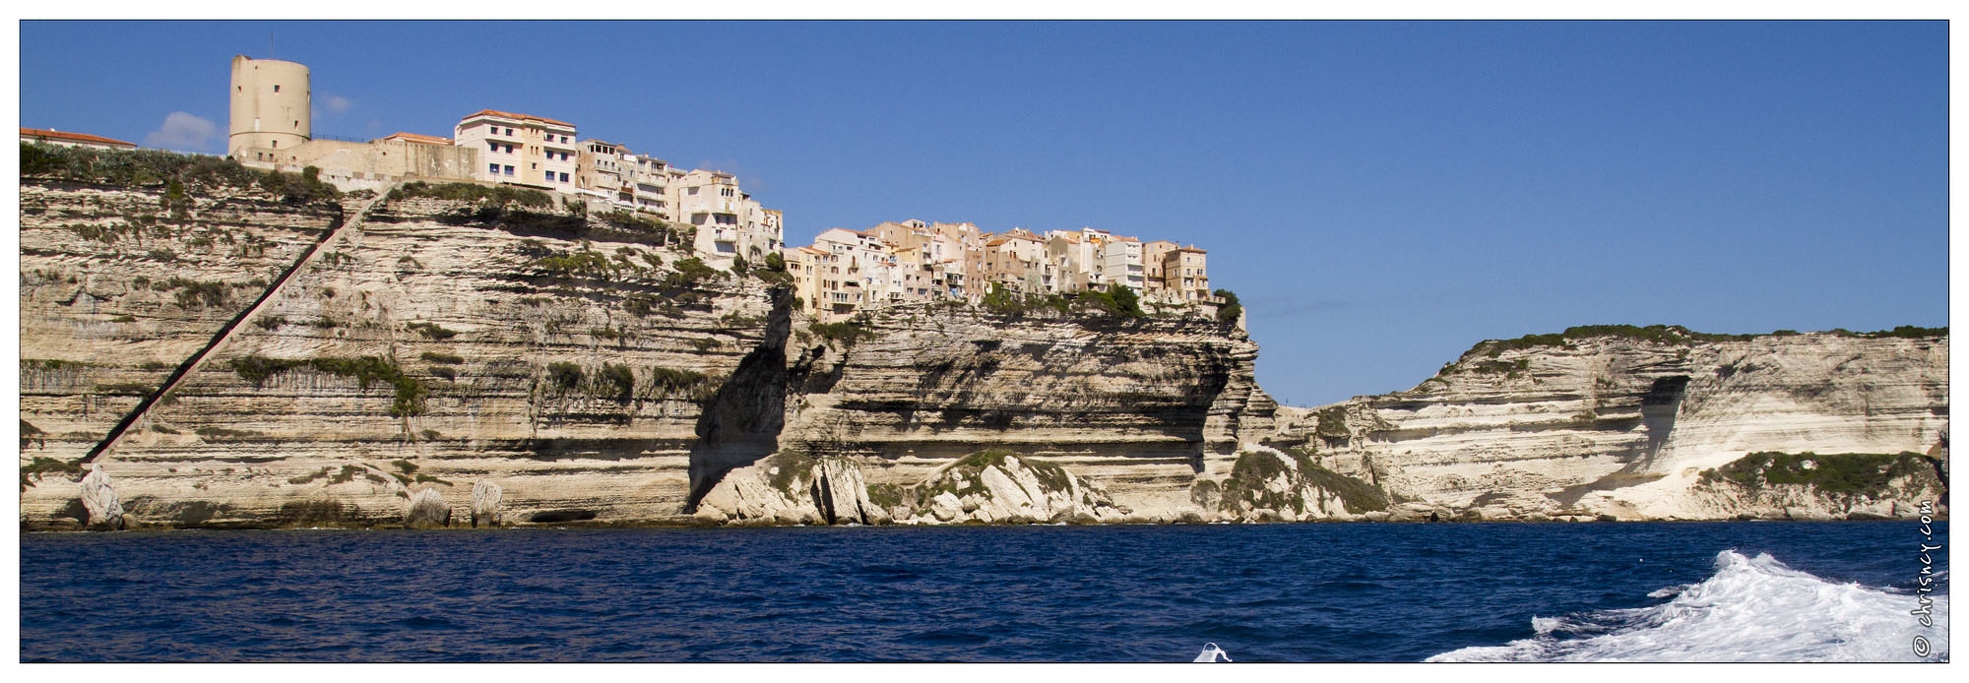 20120915-047_6716-Corse_Bonifacio.jpg